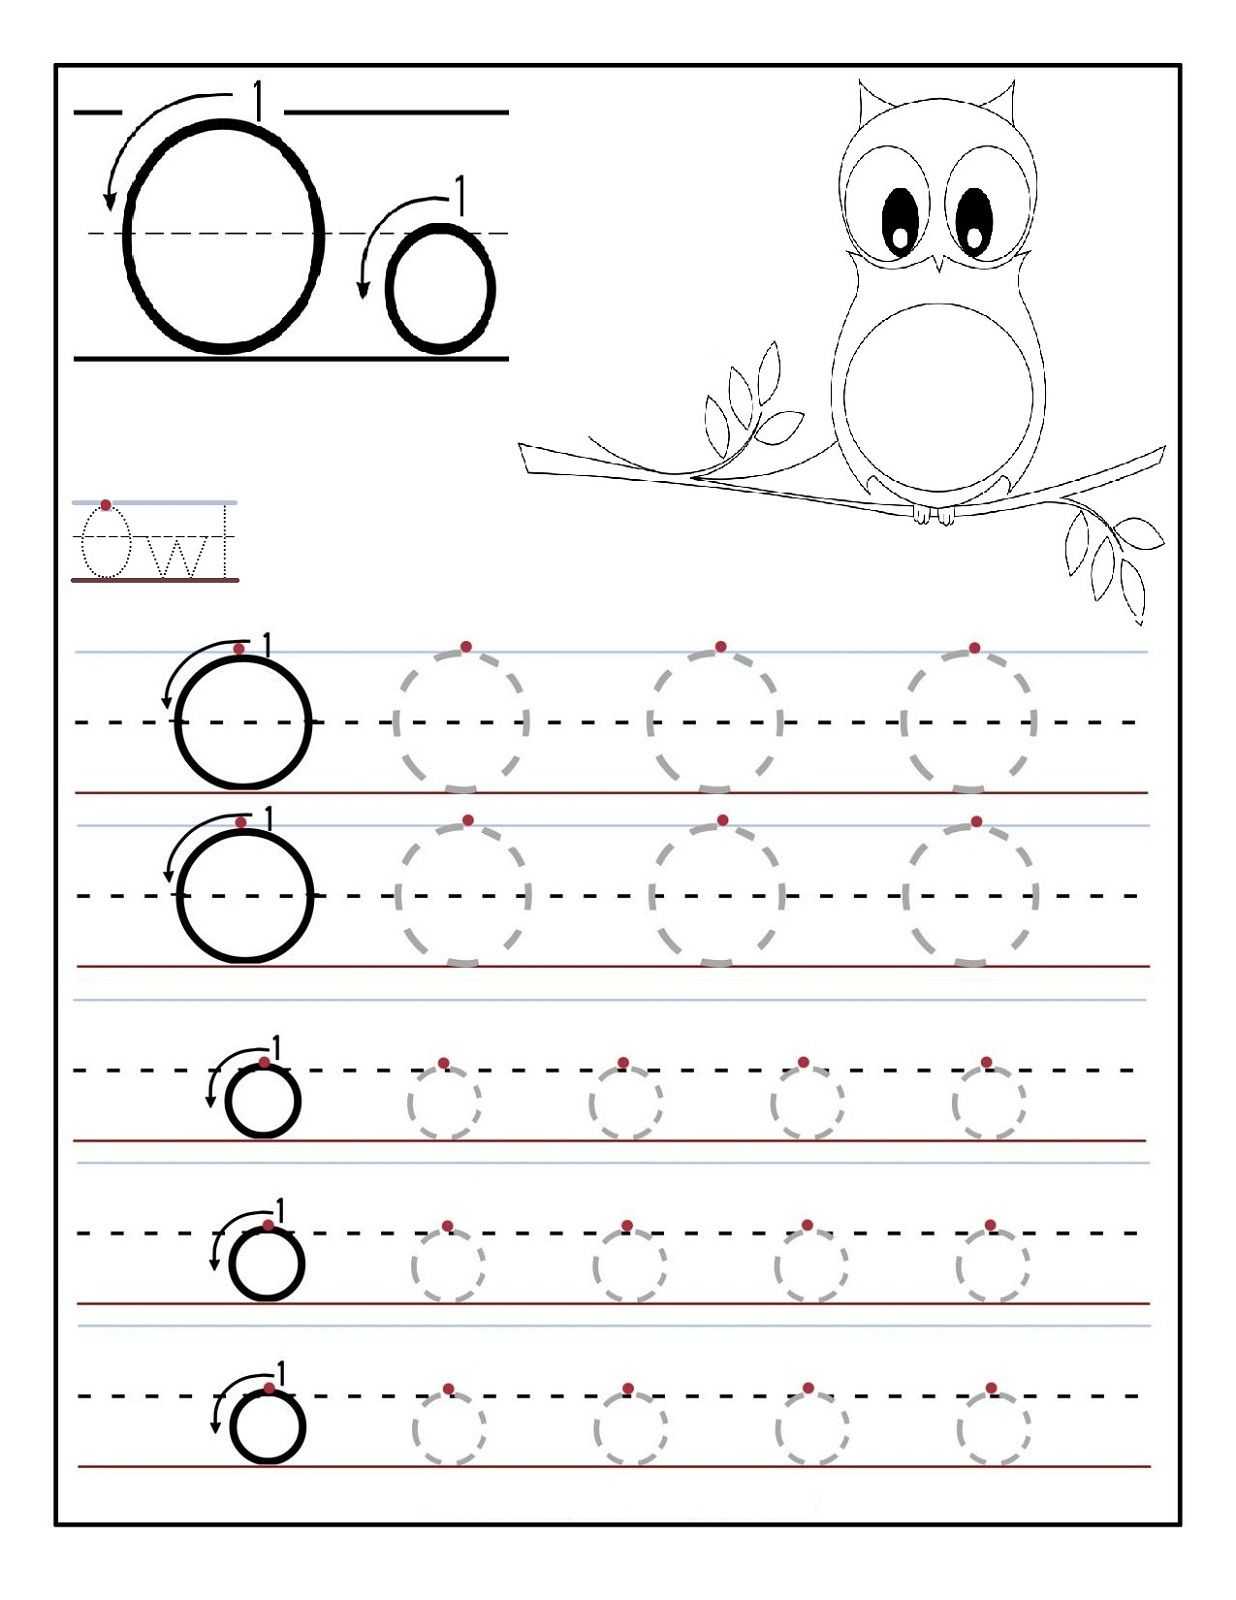 Letter O Worksheet Free | Letter O Worksheets, Preschool regarding Trace Letter O Worksheets Preschool